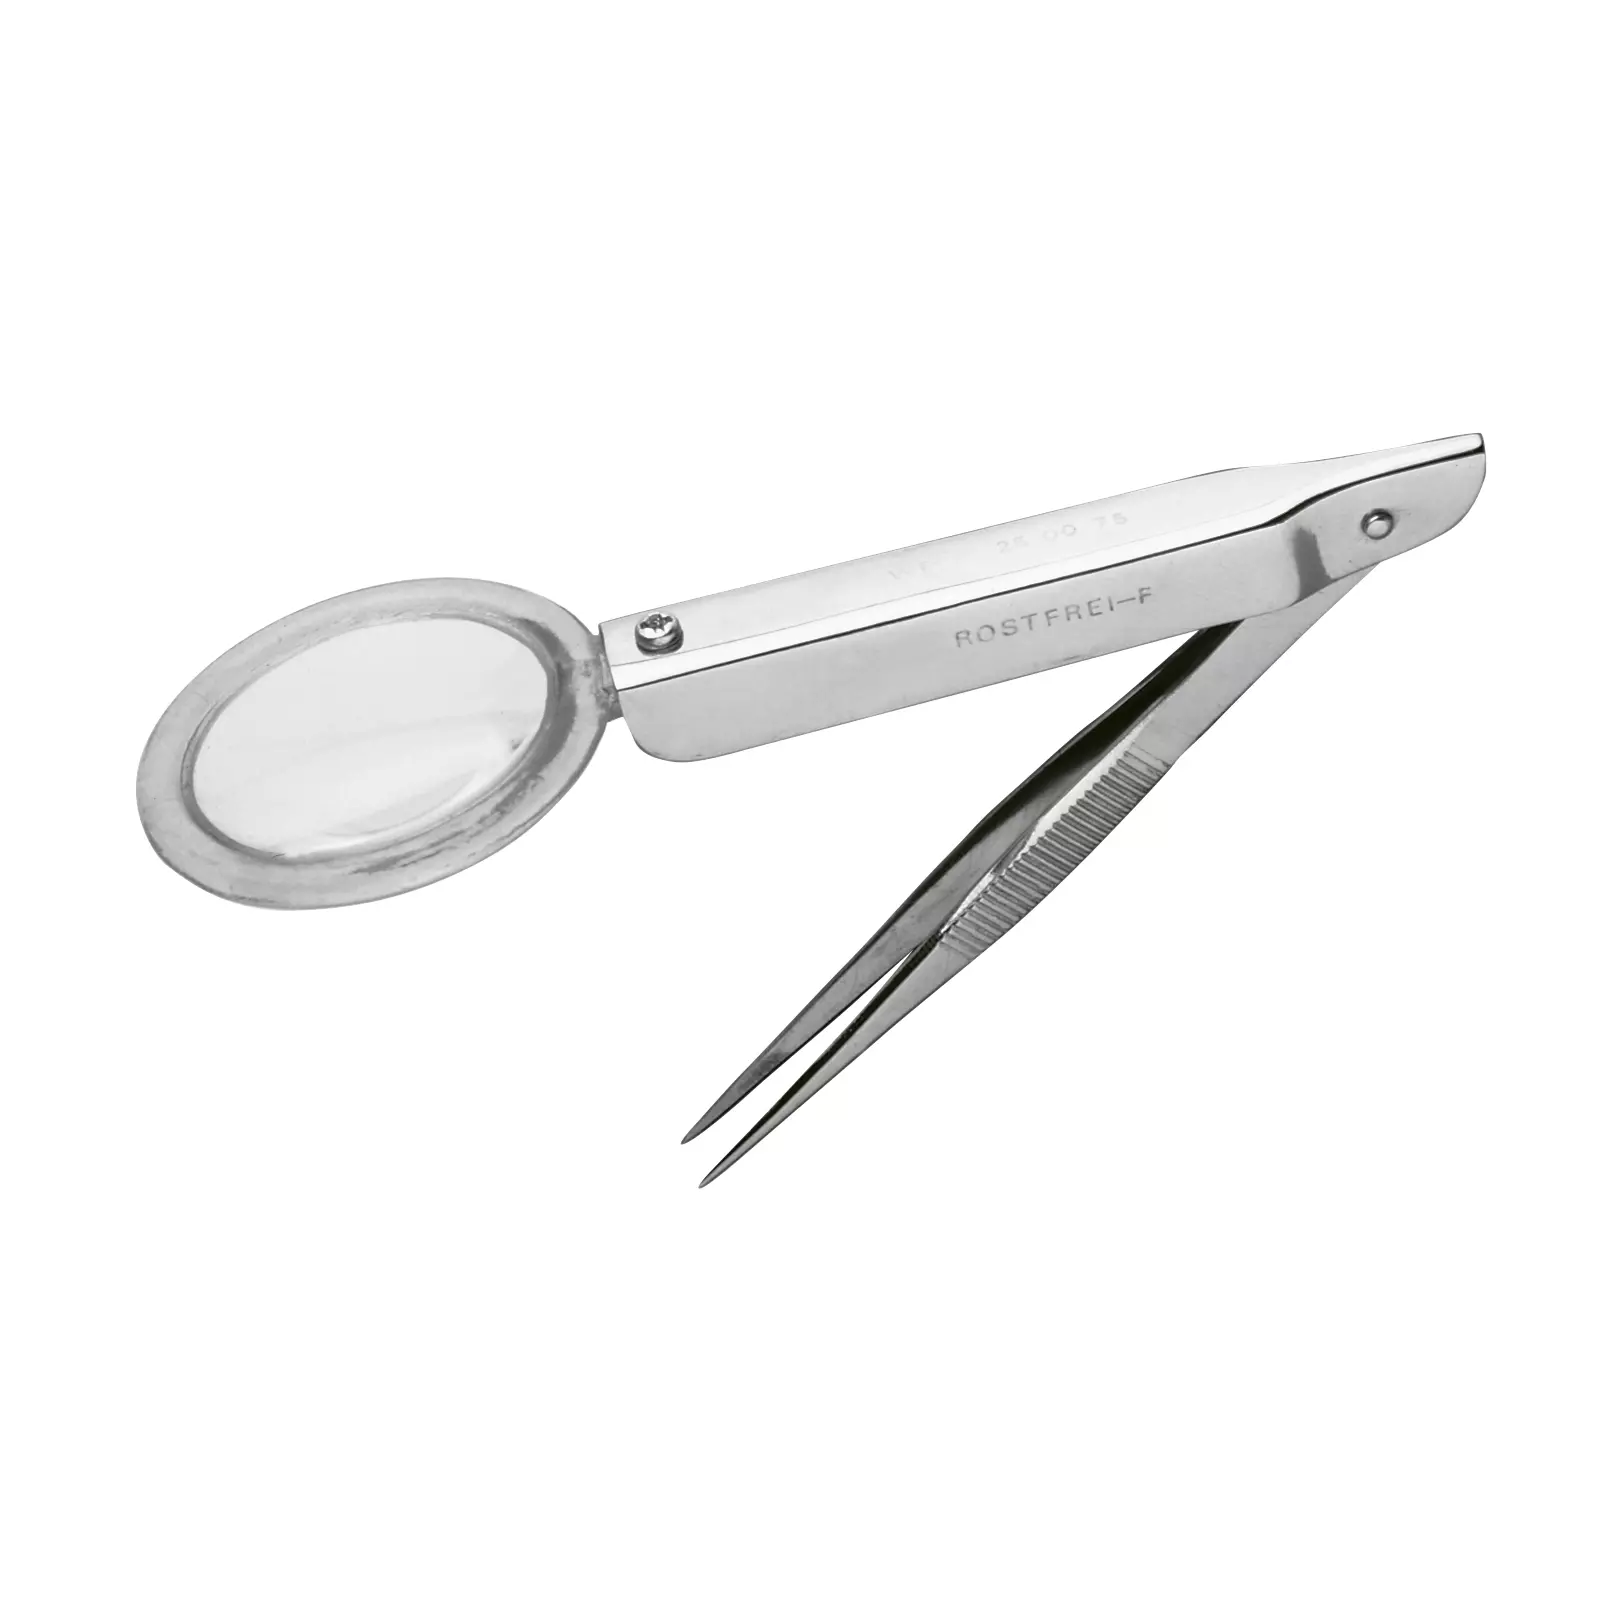 Splinter tweezers with magnifying glass